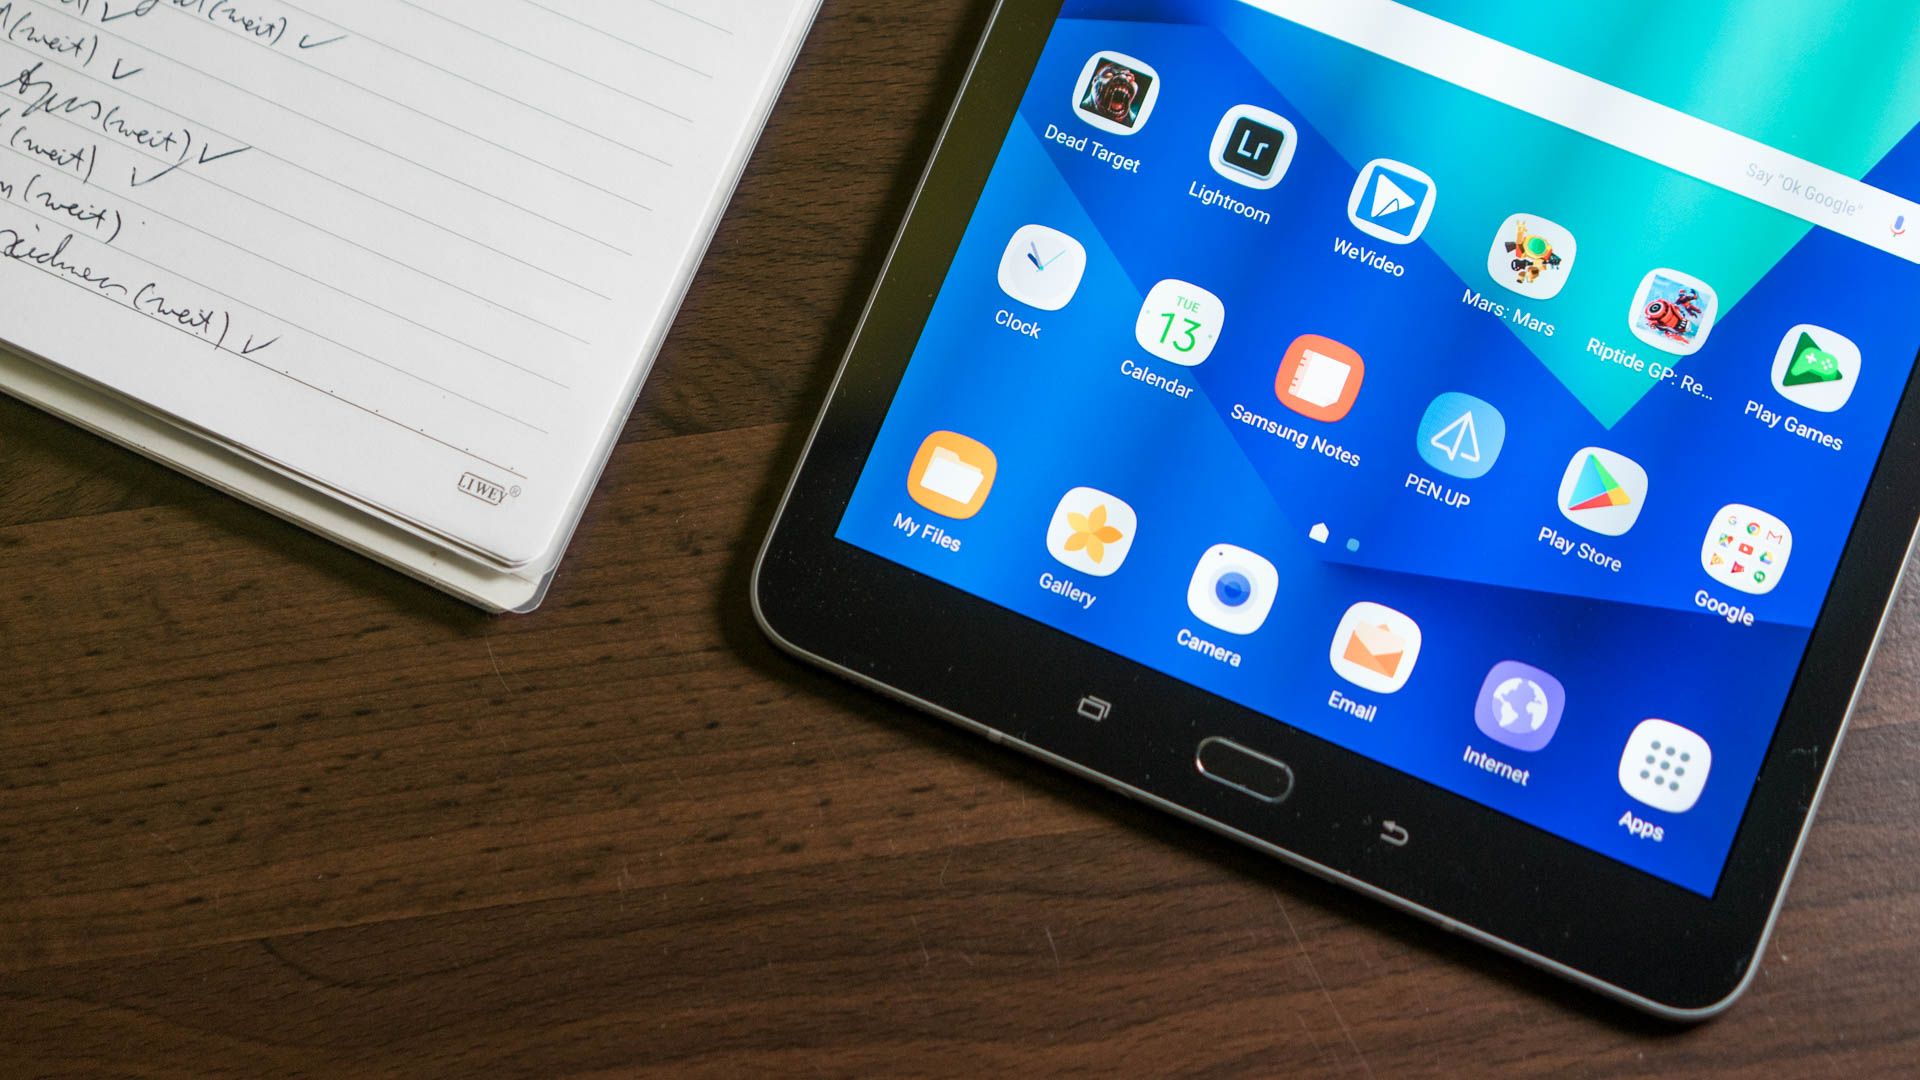 Samsung Galaxy Tab S3 Android Nougat